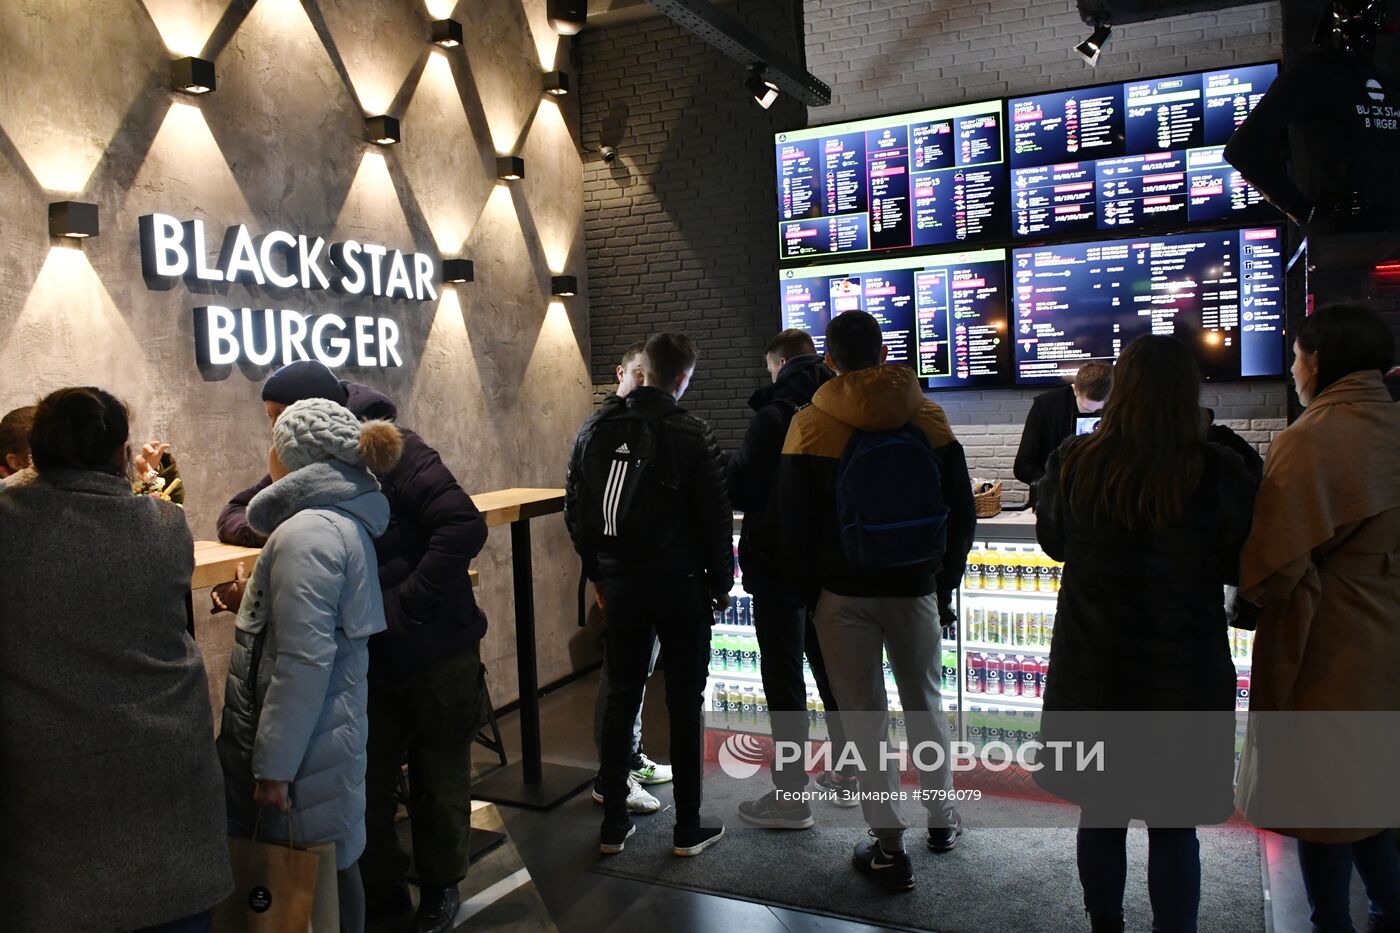 Официальное открытие ресторана Black Star Burger в Краснодаре